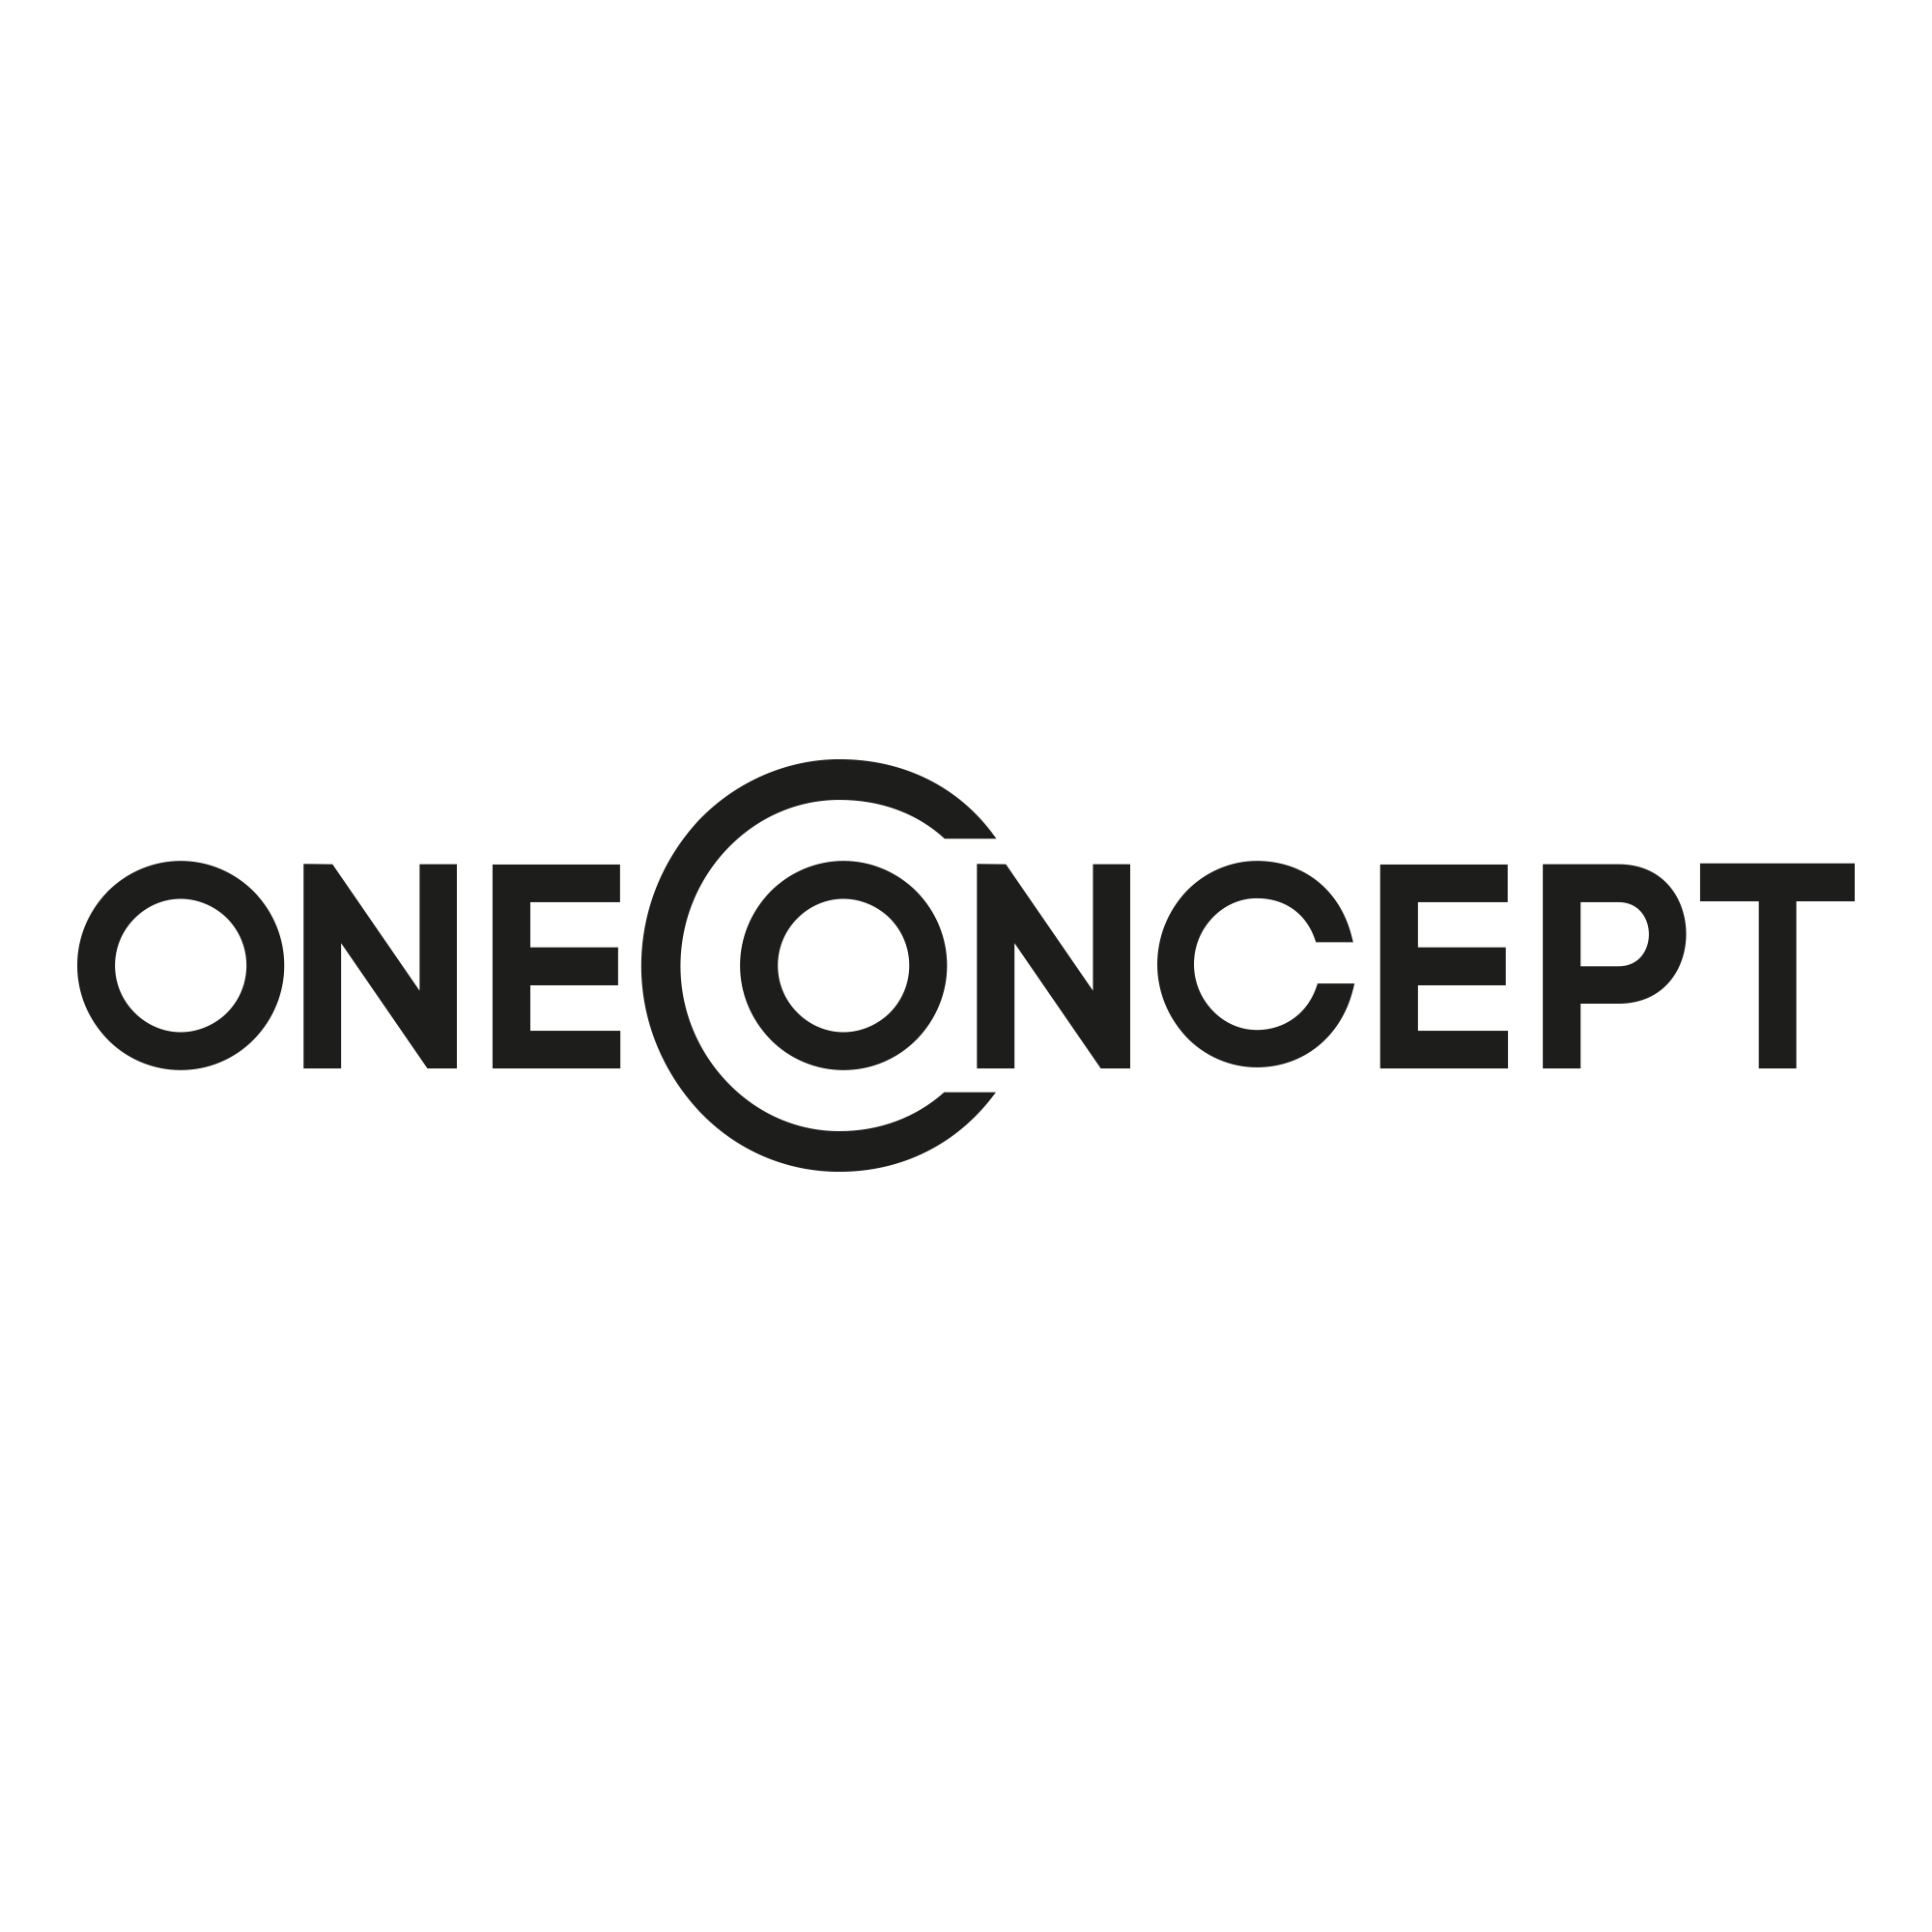 oneconcept logo